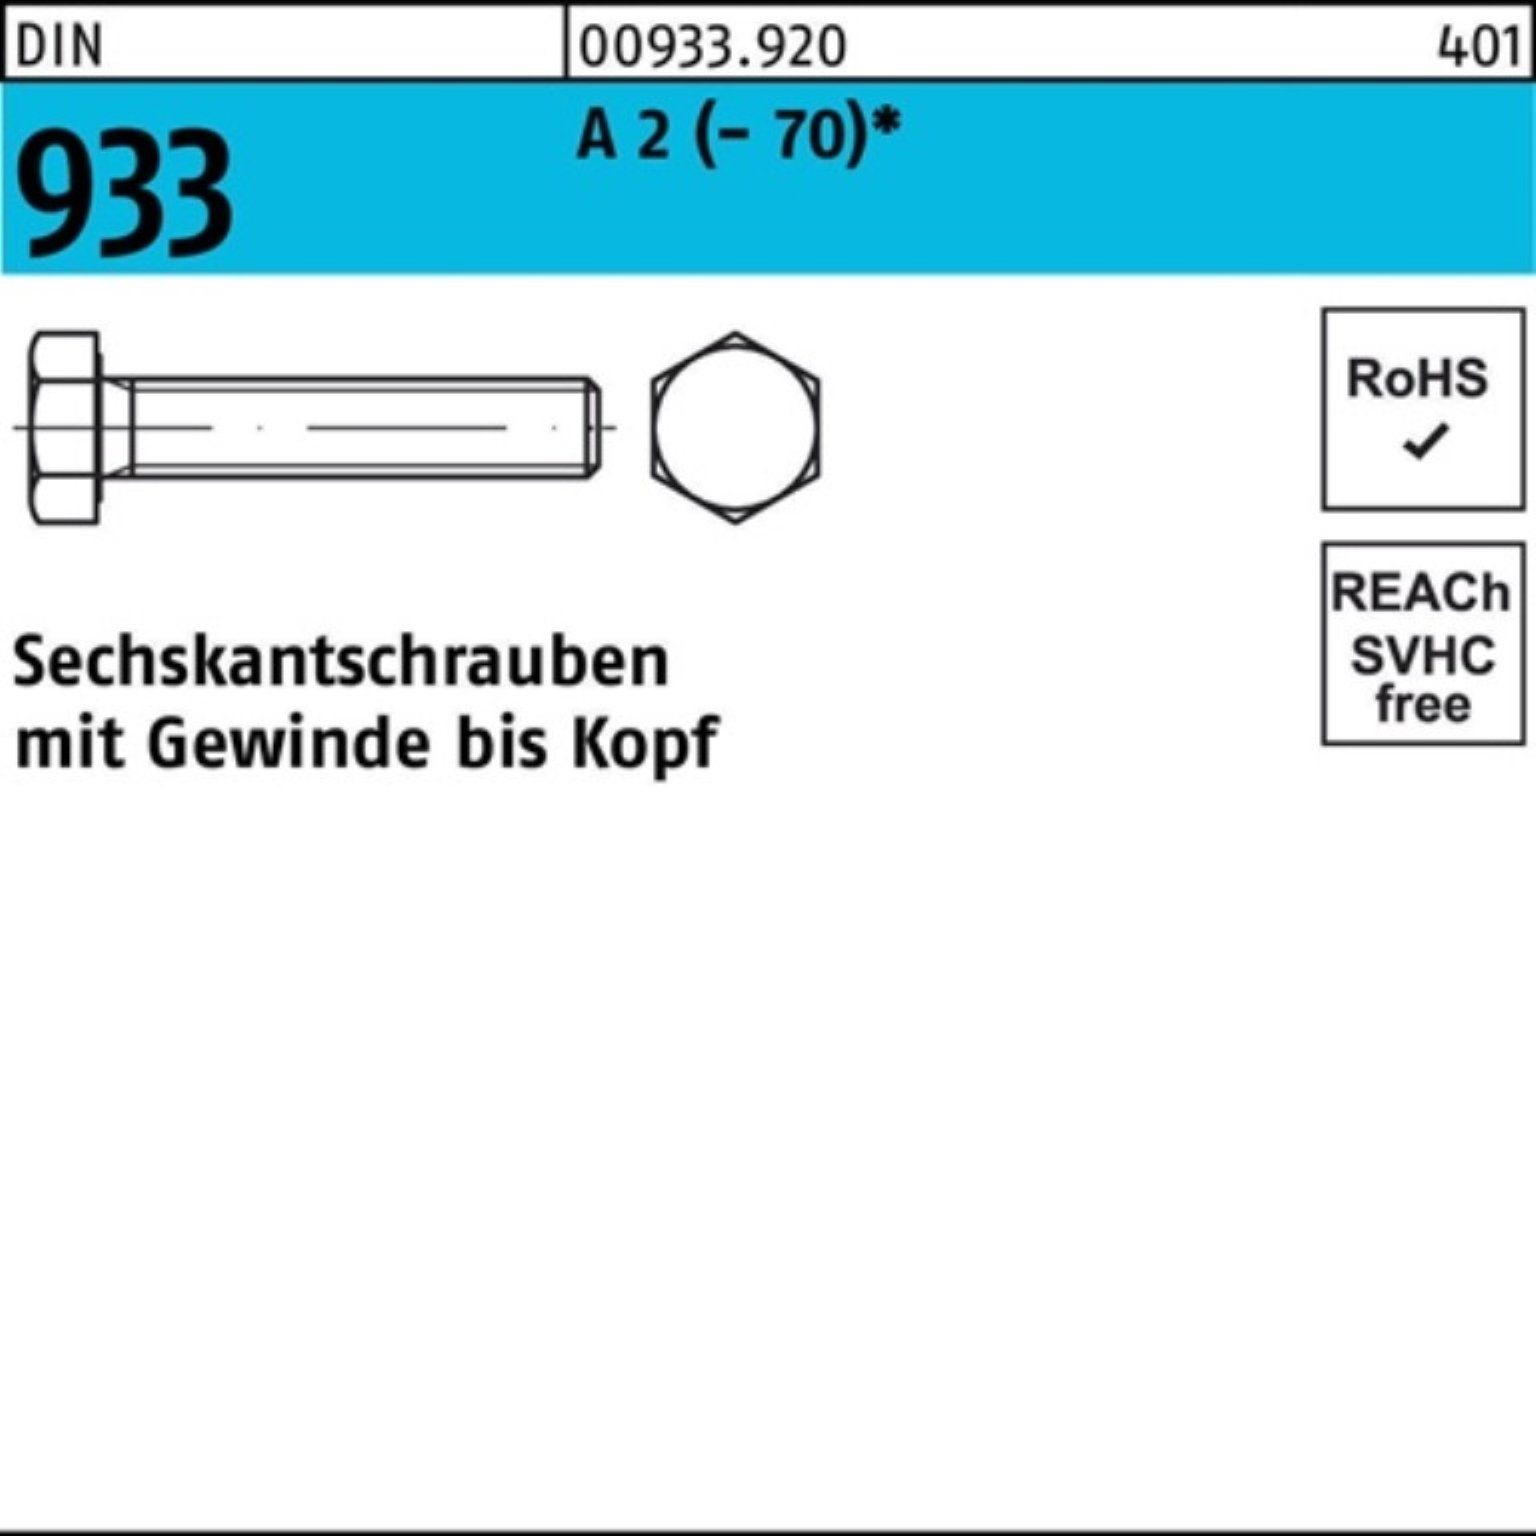 Sechskantschraube Stück Reyher 100er DIN M10x Pack 933 A (70) VG Sechskantschraube 2 1 150 D